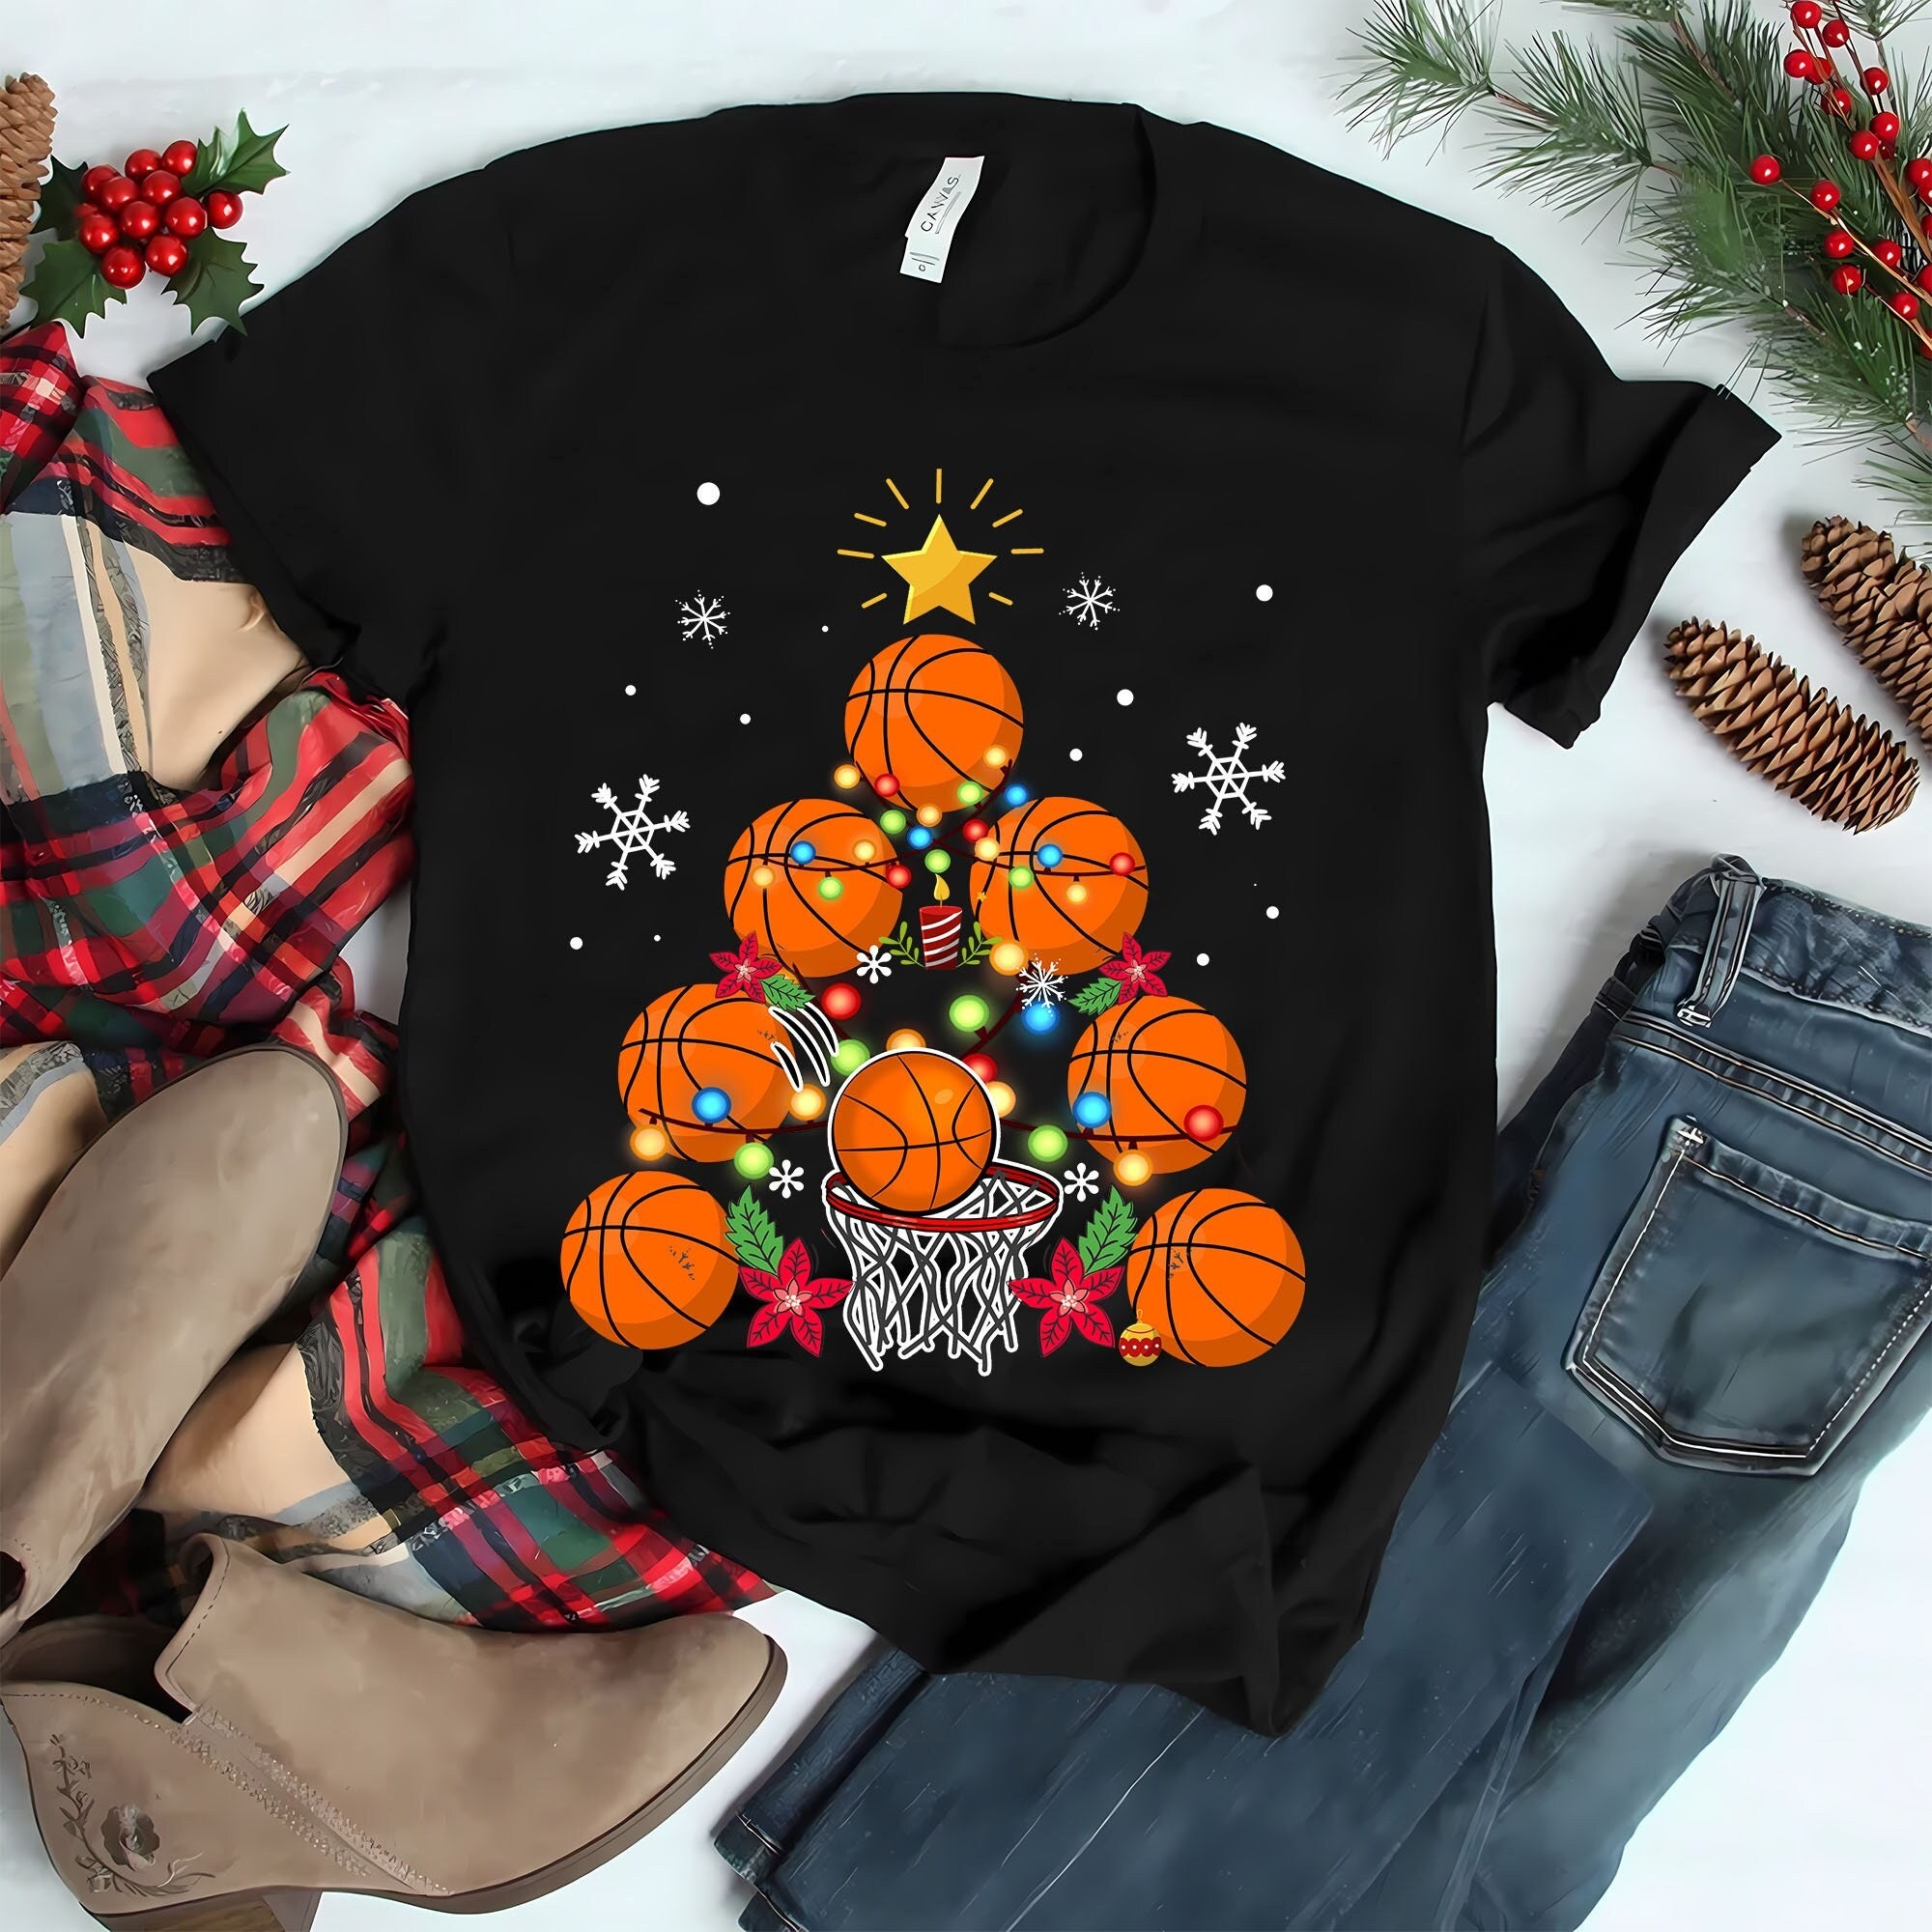 Basketball Christmas Tree Gifts t shirt, basketball christmas sweatshirt, basketball christmas shirt, basketball shirt, basketball hoodies